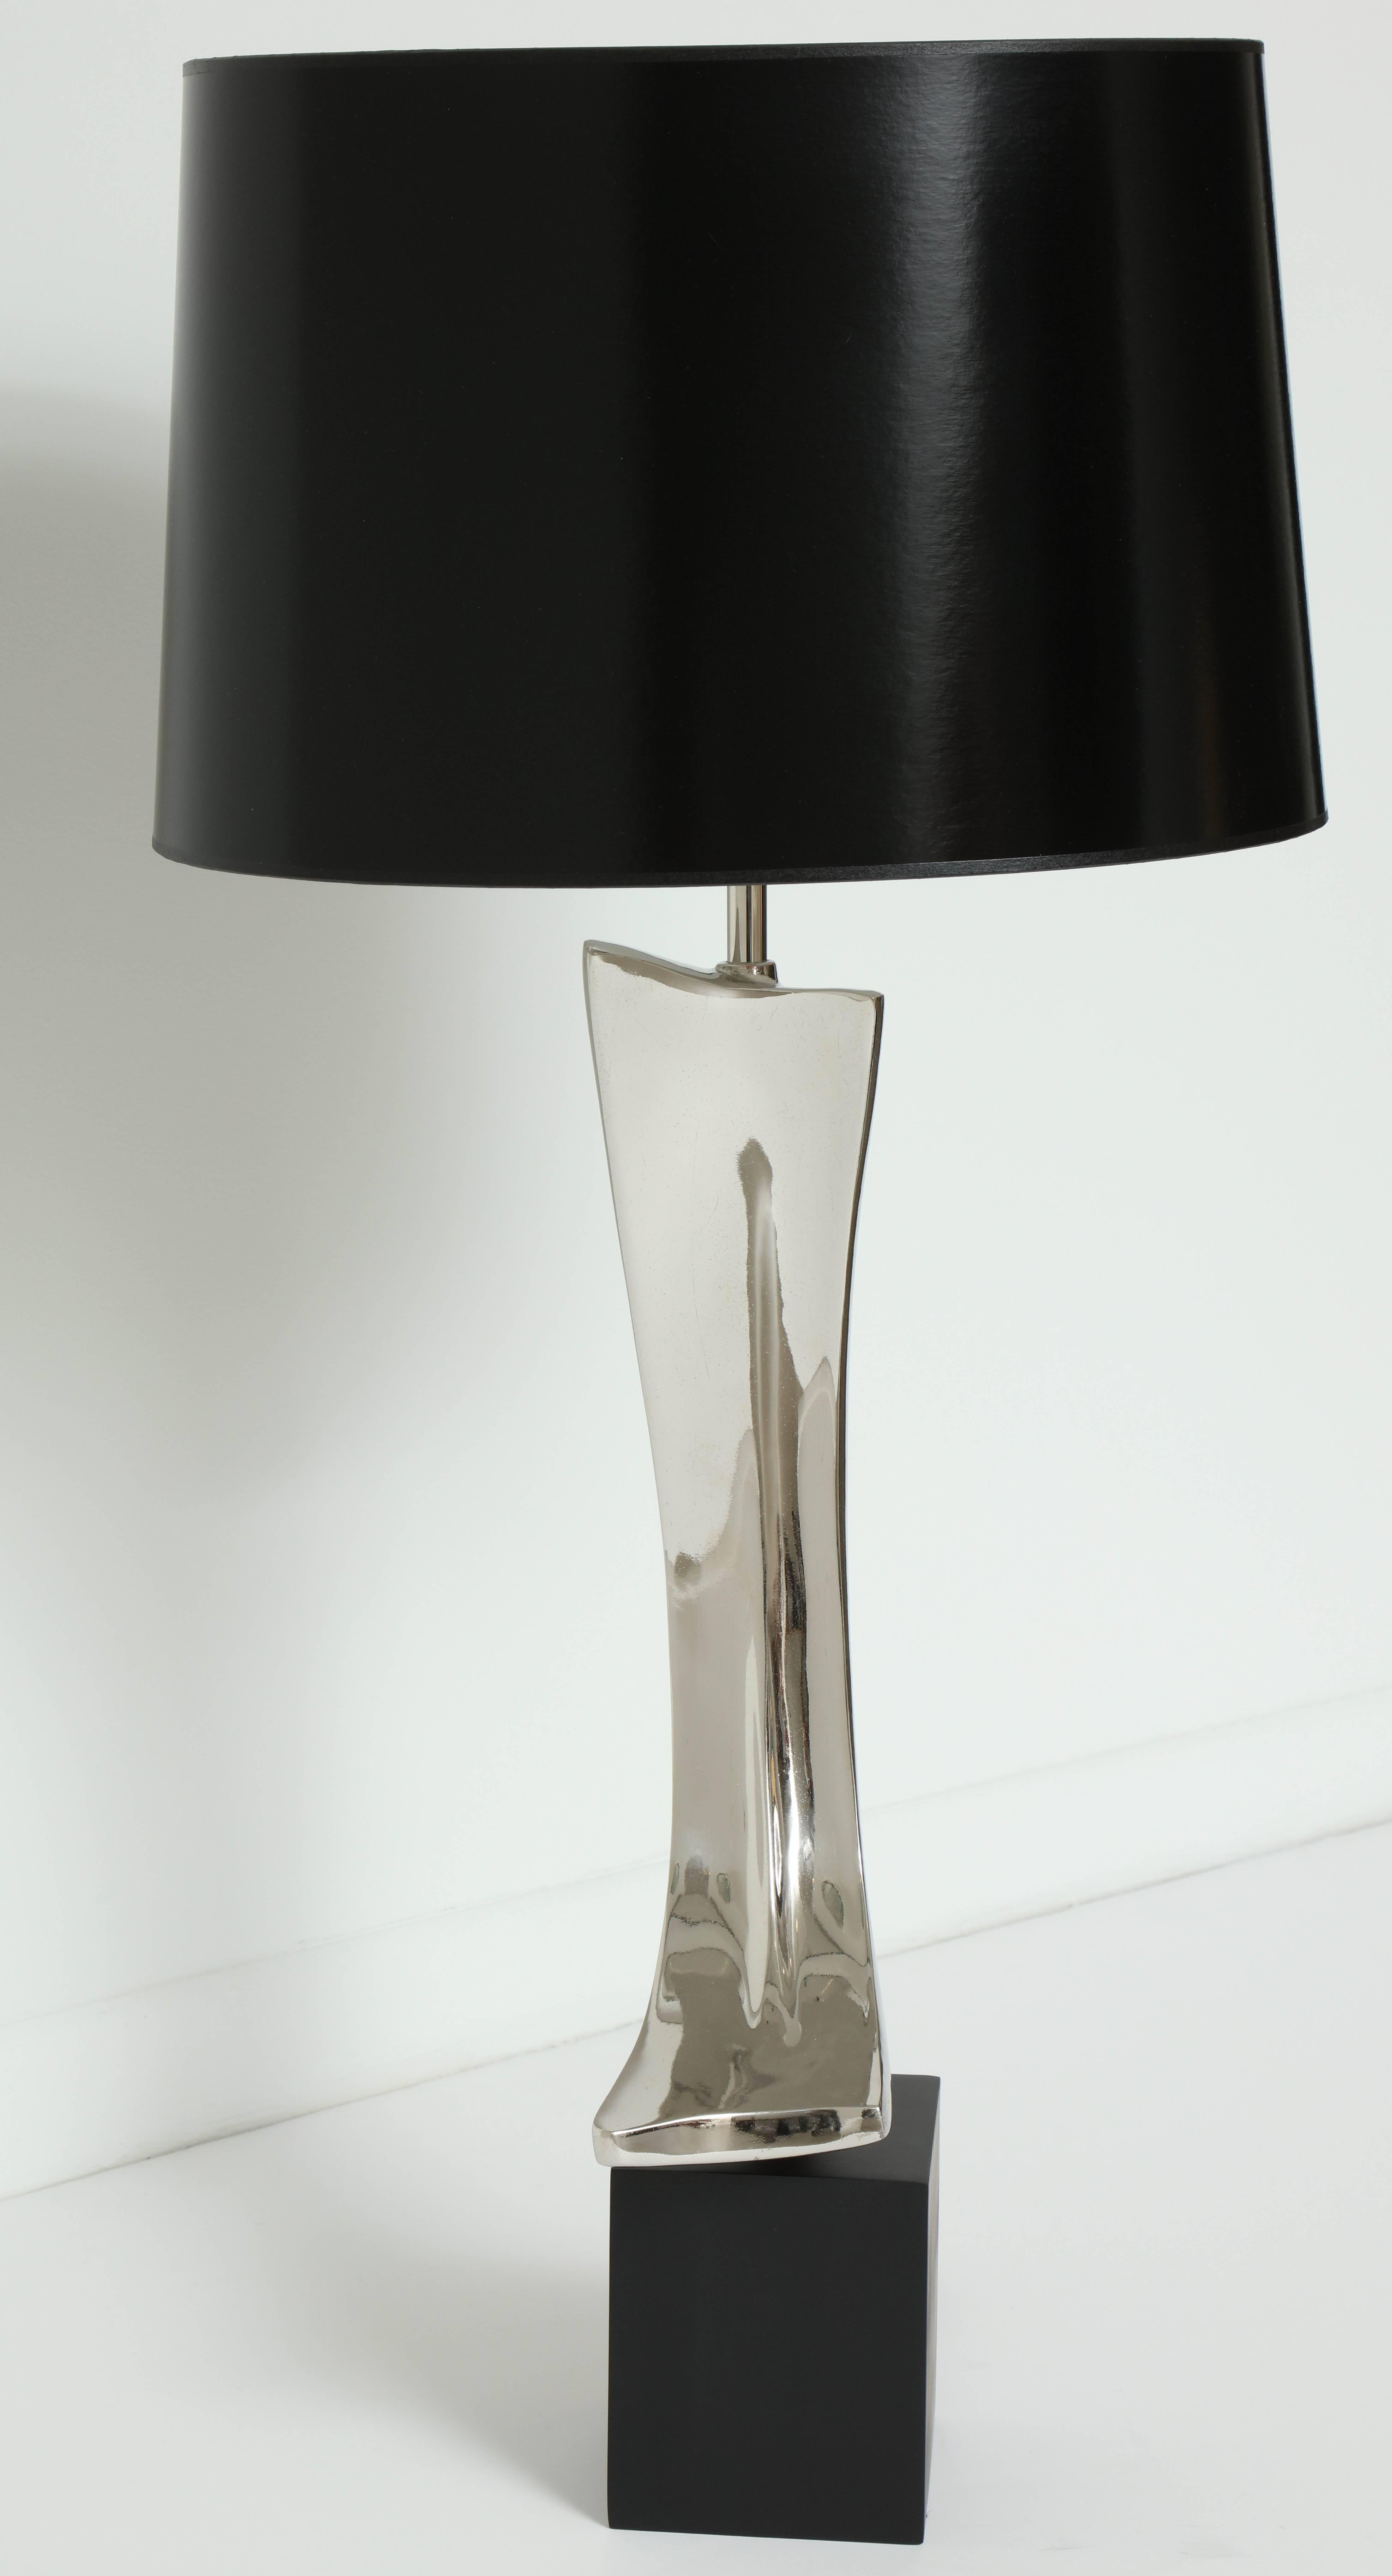 Chrome Lampe de Maurizio Tempestini, C 1950, chrome, seule lampe, sans abat-jour inclus en vente